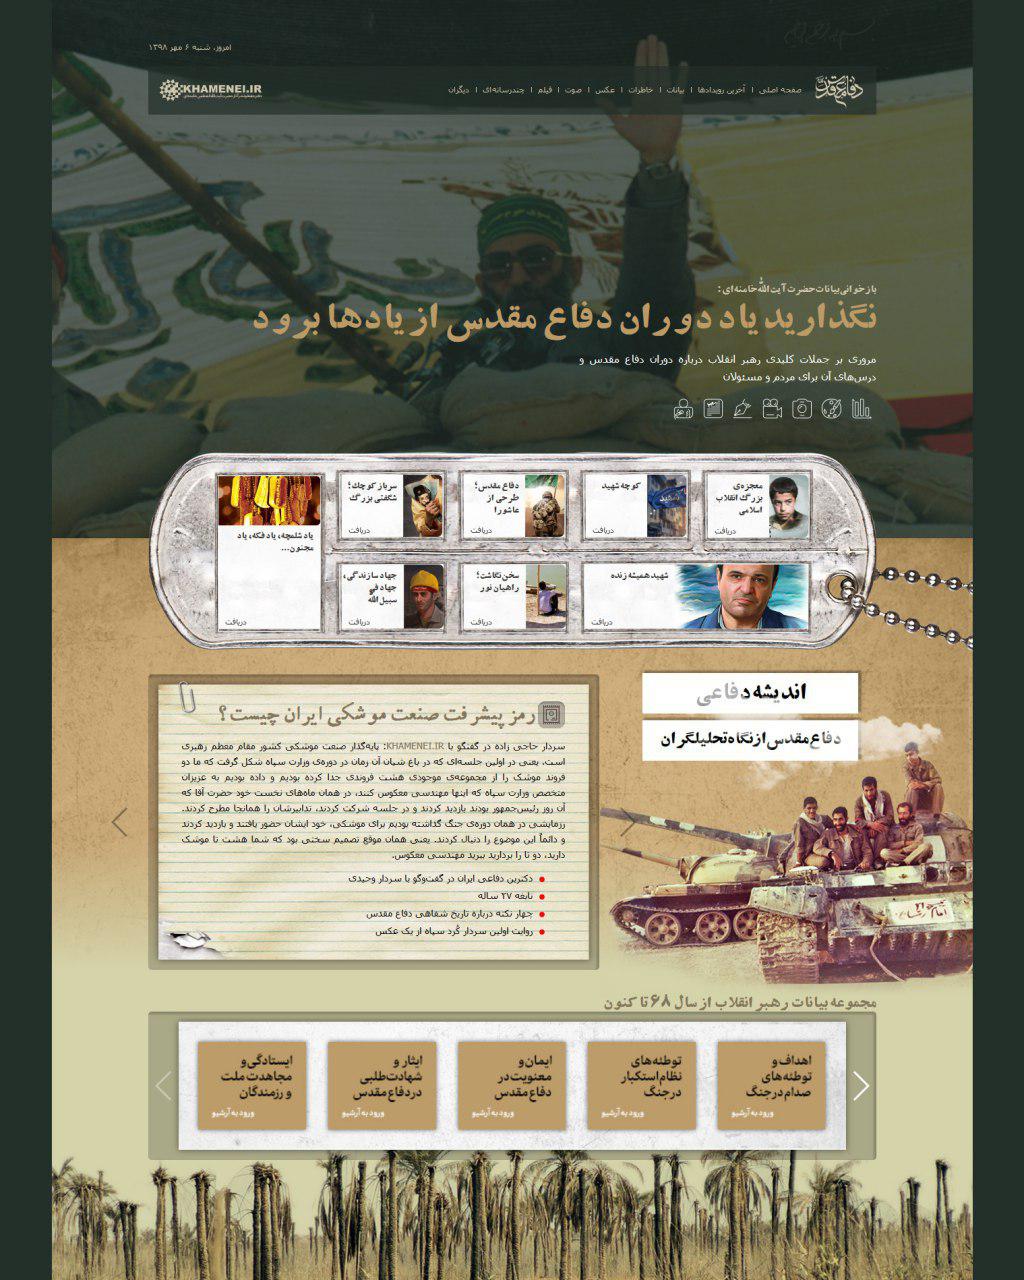 http://idc0-cdn0.khamenei.ir/ndata/news/43573/smpf-1.jpg